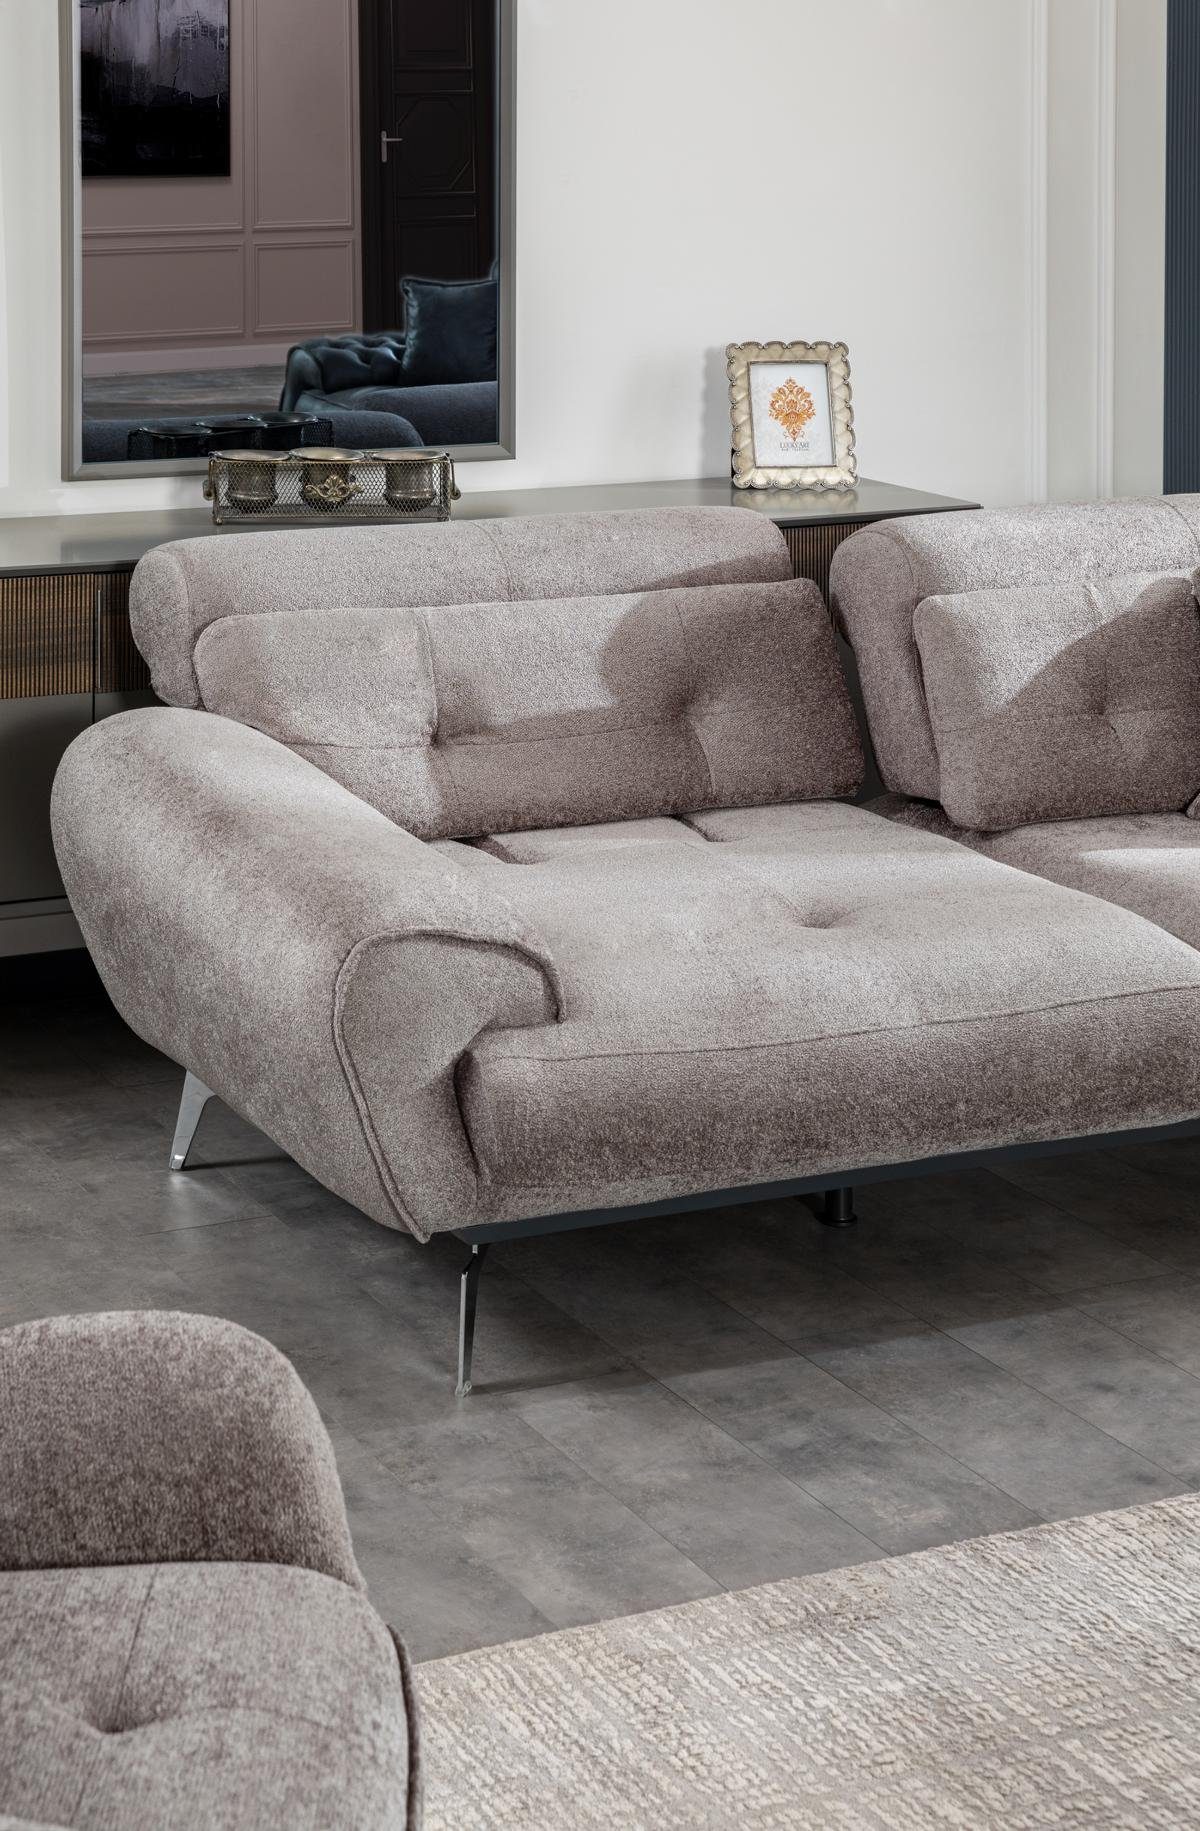 JVmoebel Sofa in Made Italienische Wohnzimmer Stil Europe Luxus Sofa Design